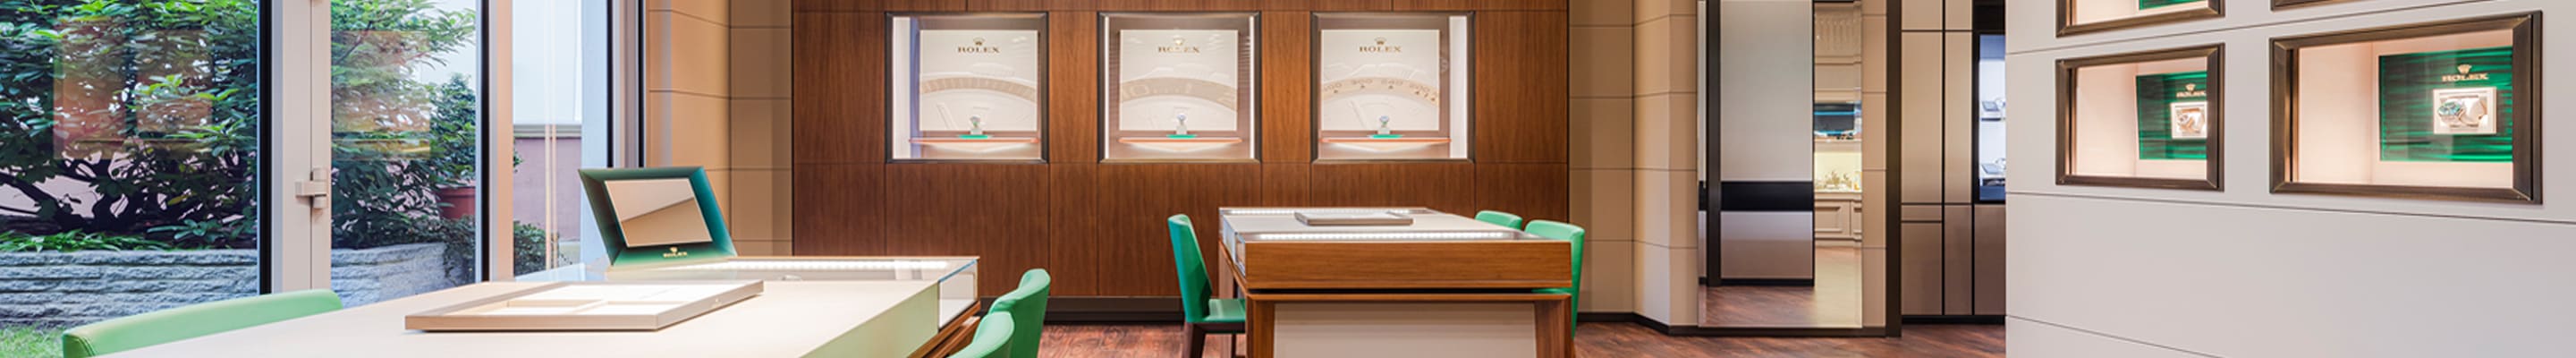 Die Rolex Lounge von Juwelier Lorenz ist ein Showroom mit zwei Vitrinen-Tischen und grünen Lederstühlen sowie Schaukästen in der Holzwand.